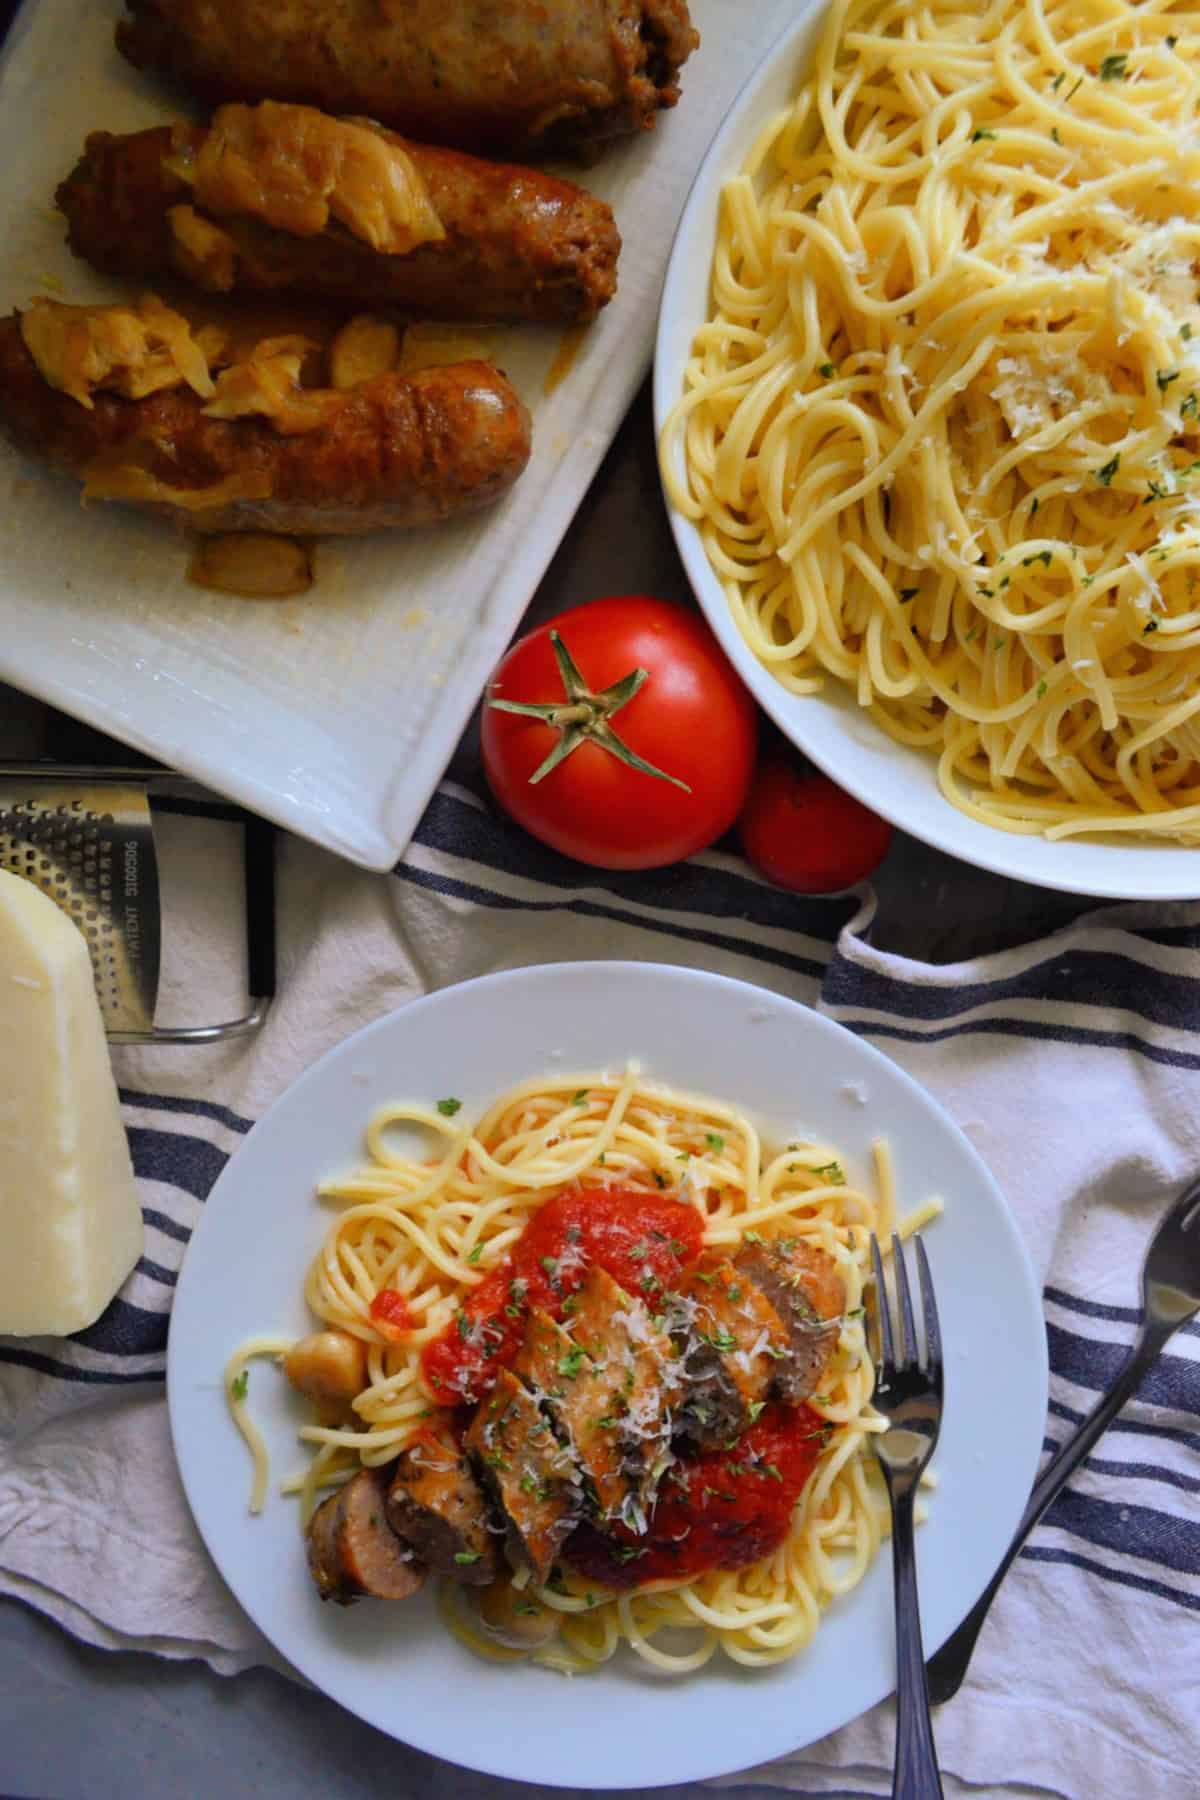  widok z góry plated spaghetti z marinara i włoskiej kiełbasy obok spaghetti miski i półmisek kiełbasy.